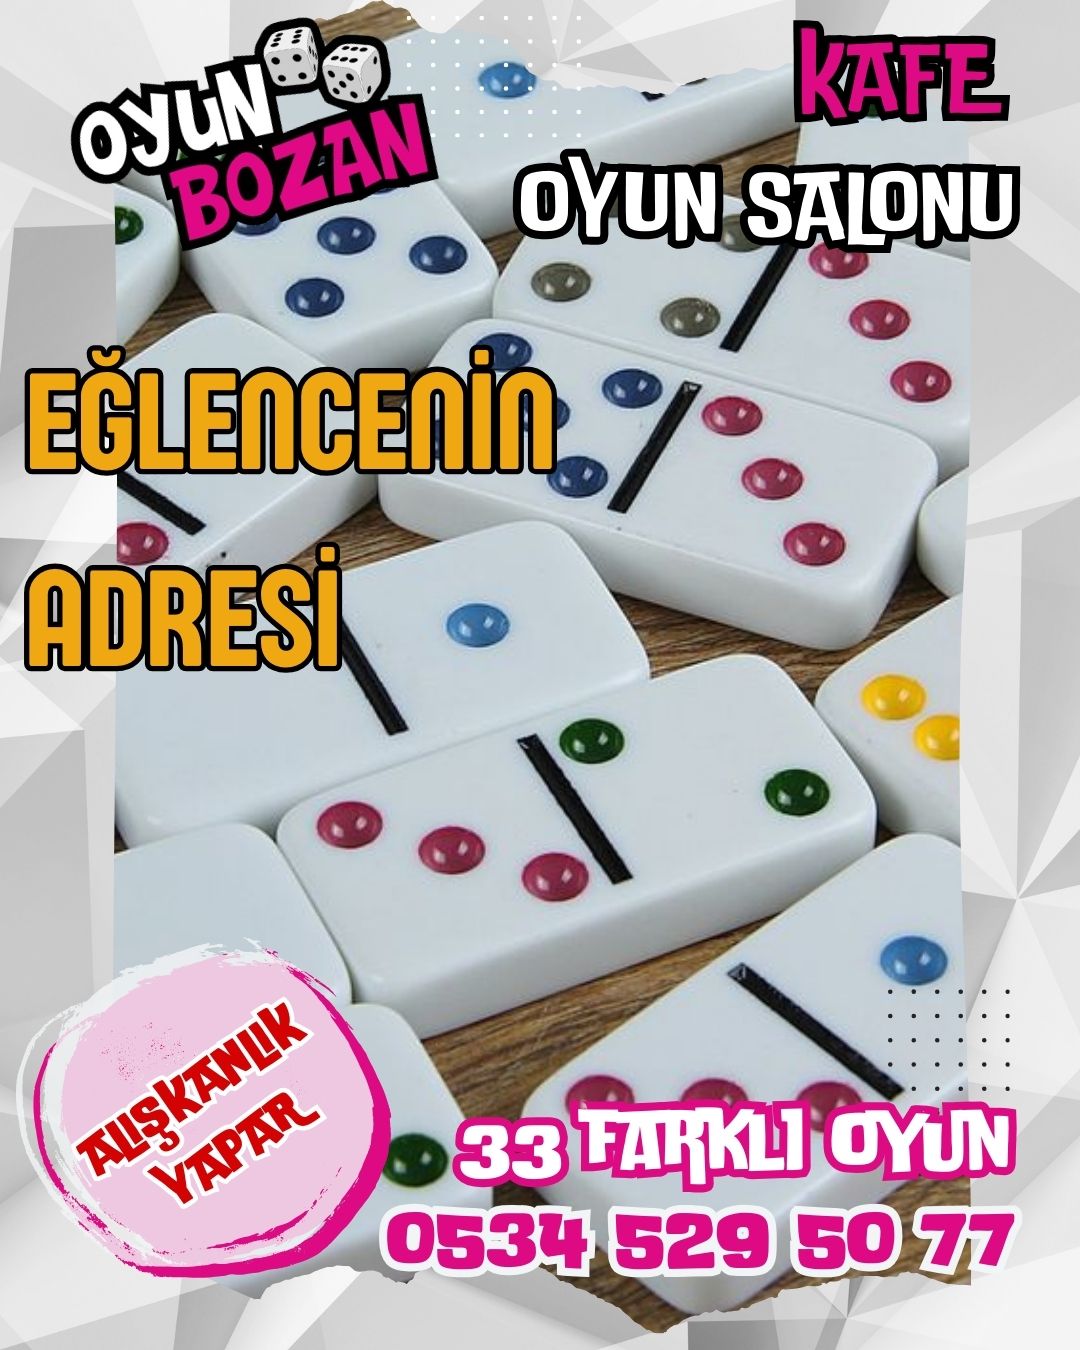 Tarsus Oyun Bozan Kafe Post almas websitesi ilkedesign tarafndan yaplmtr.